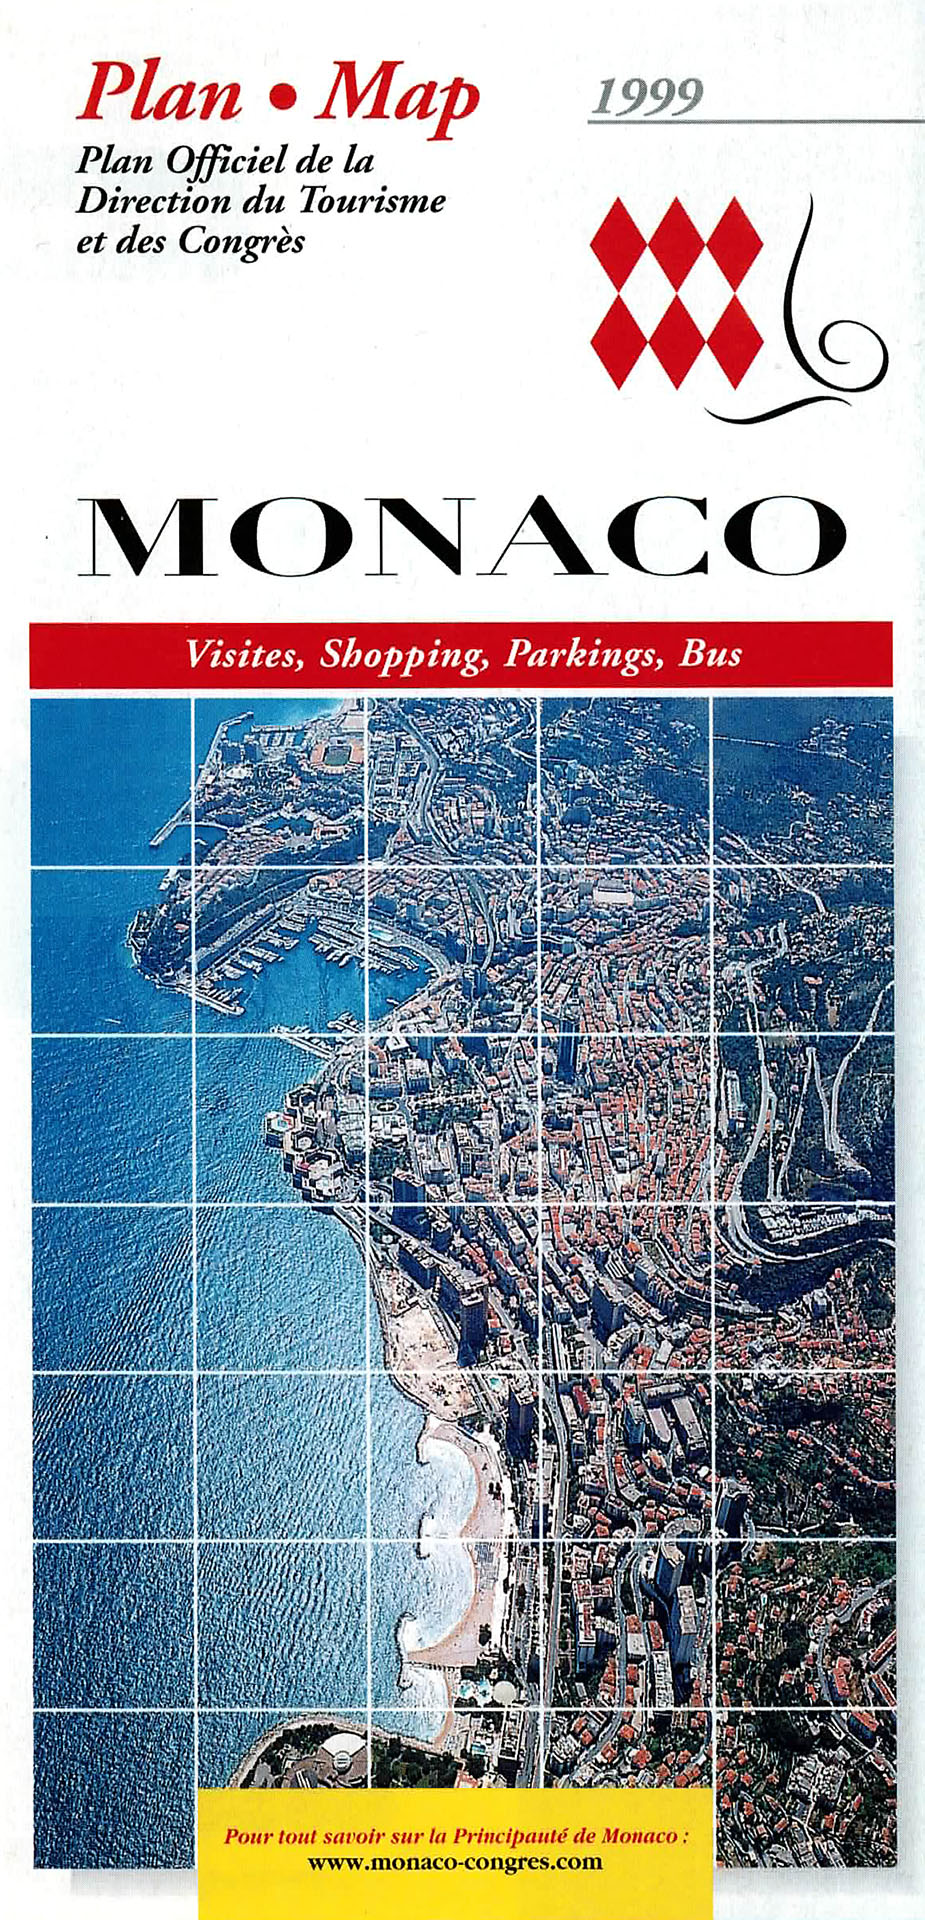 Plan MONACO - Monaco Government Tourist Bureau